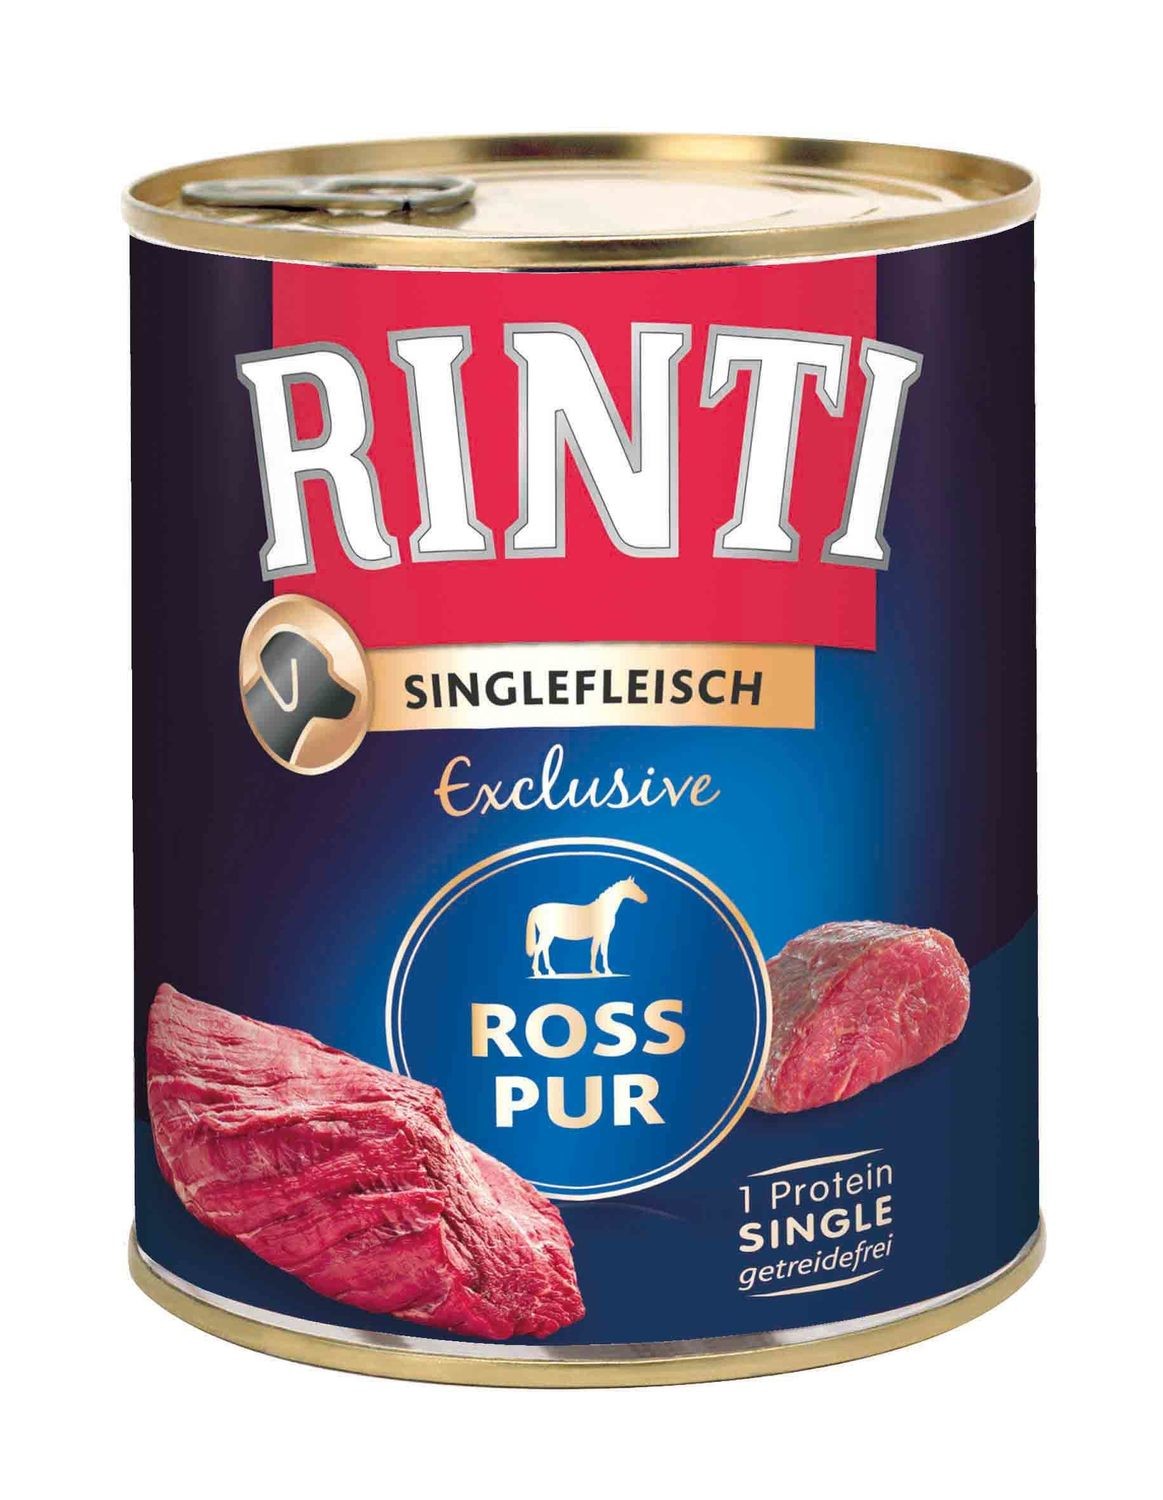 Rinti • Singlefleisch • Exclusive • Ross Pur